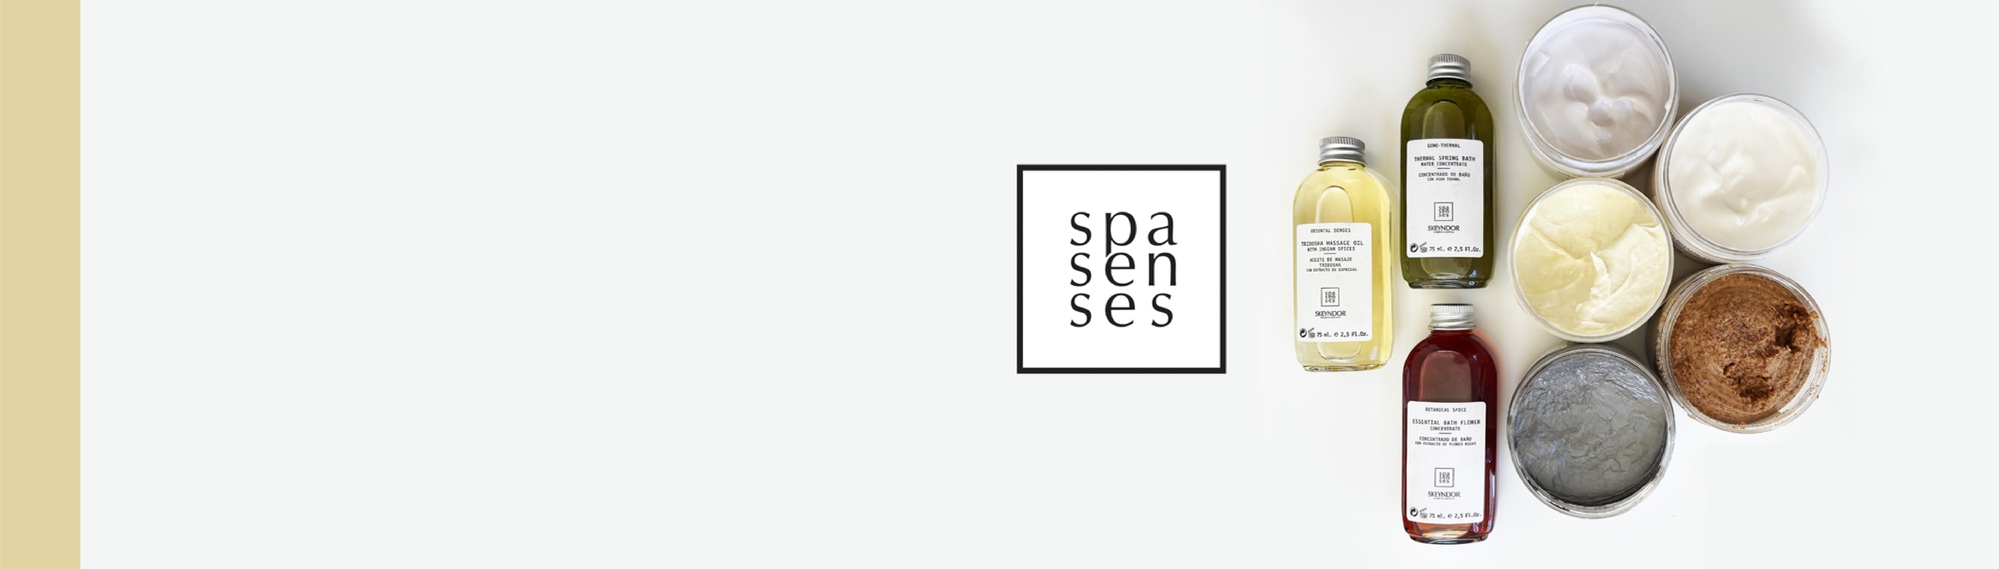 Spa Senses